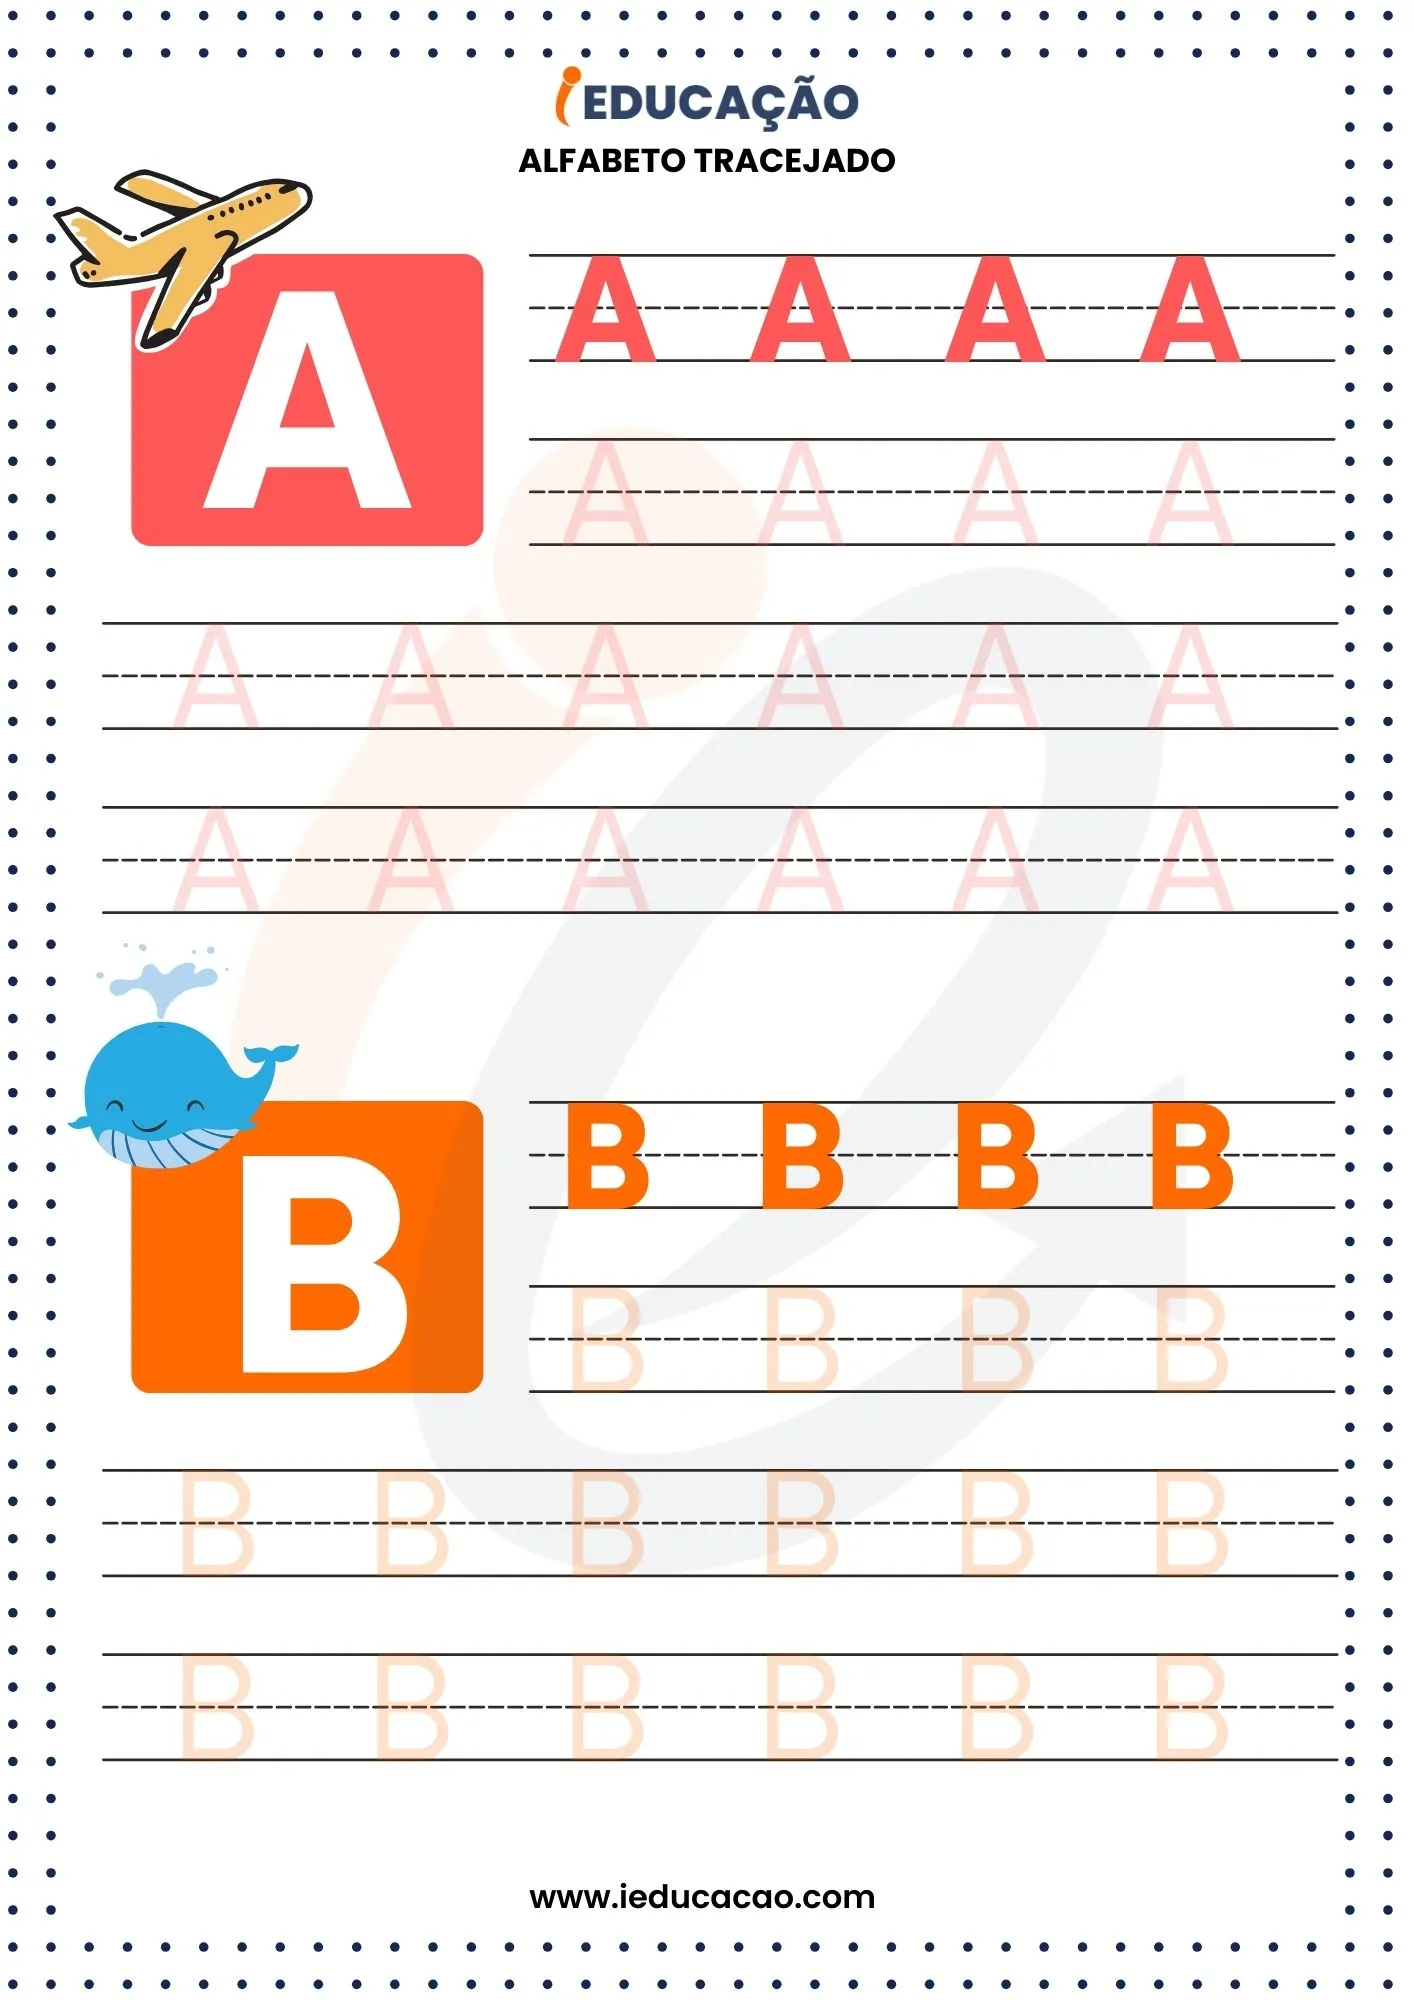 Alfabeto Tracejado A e B